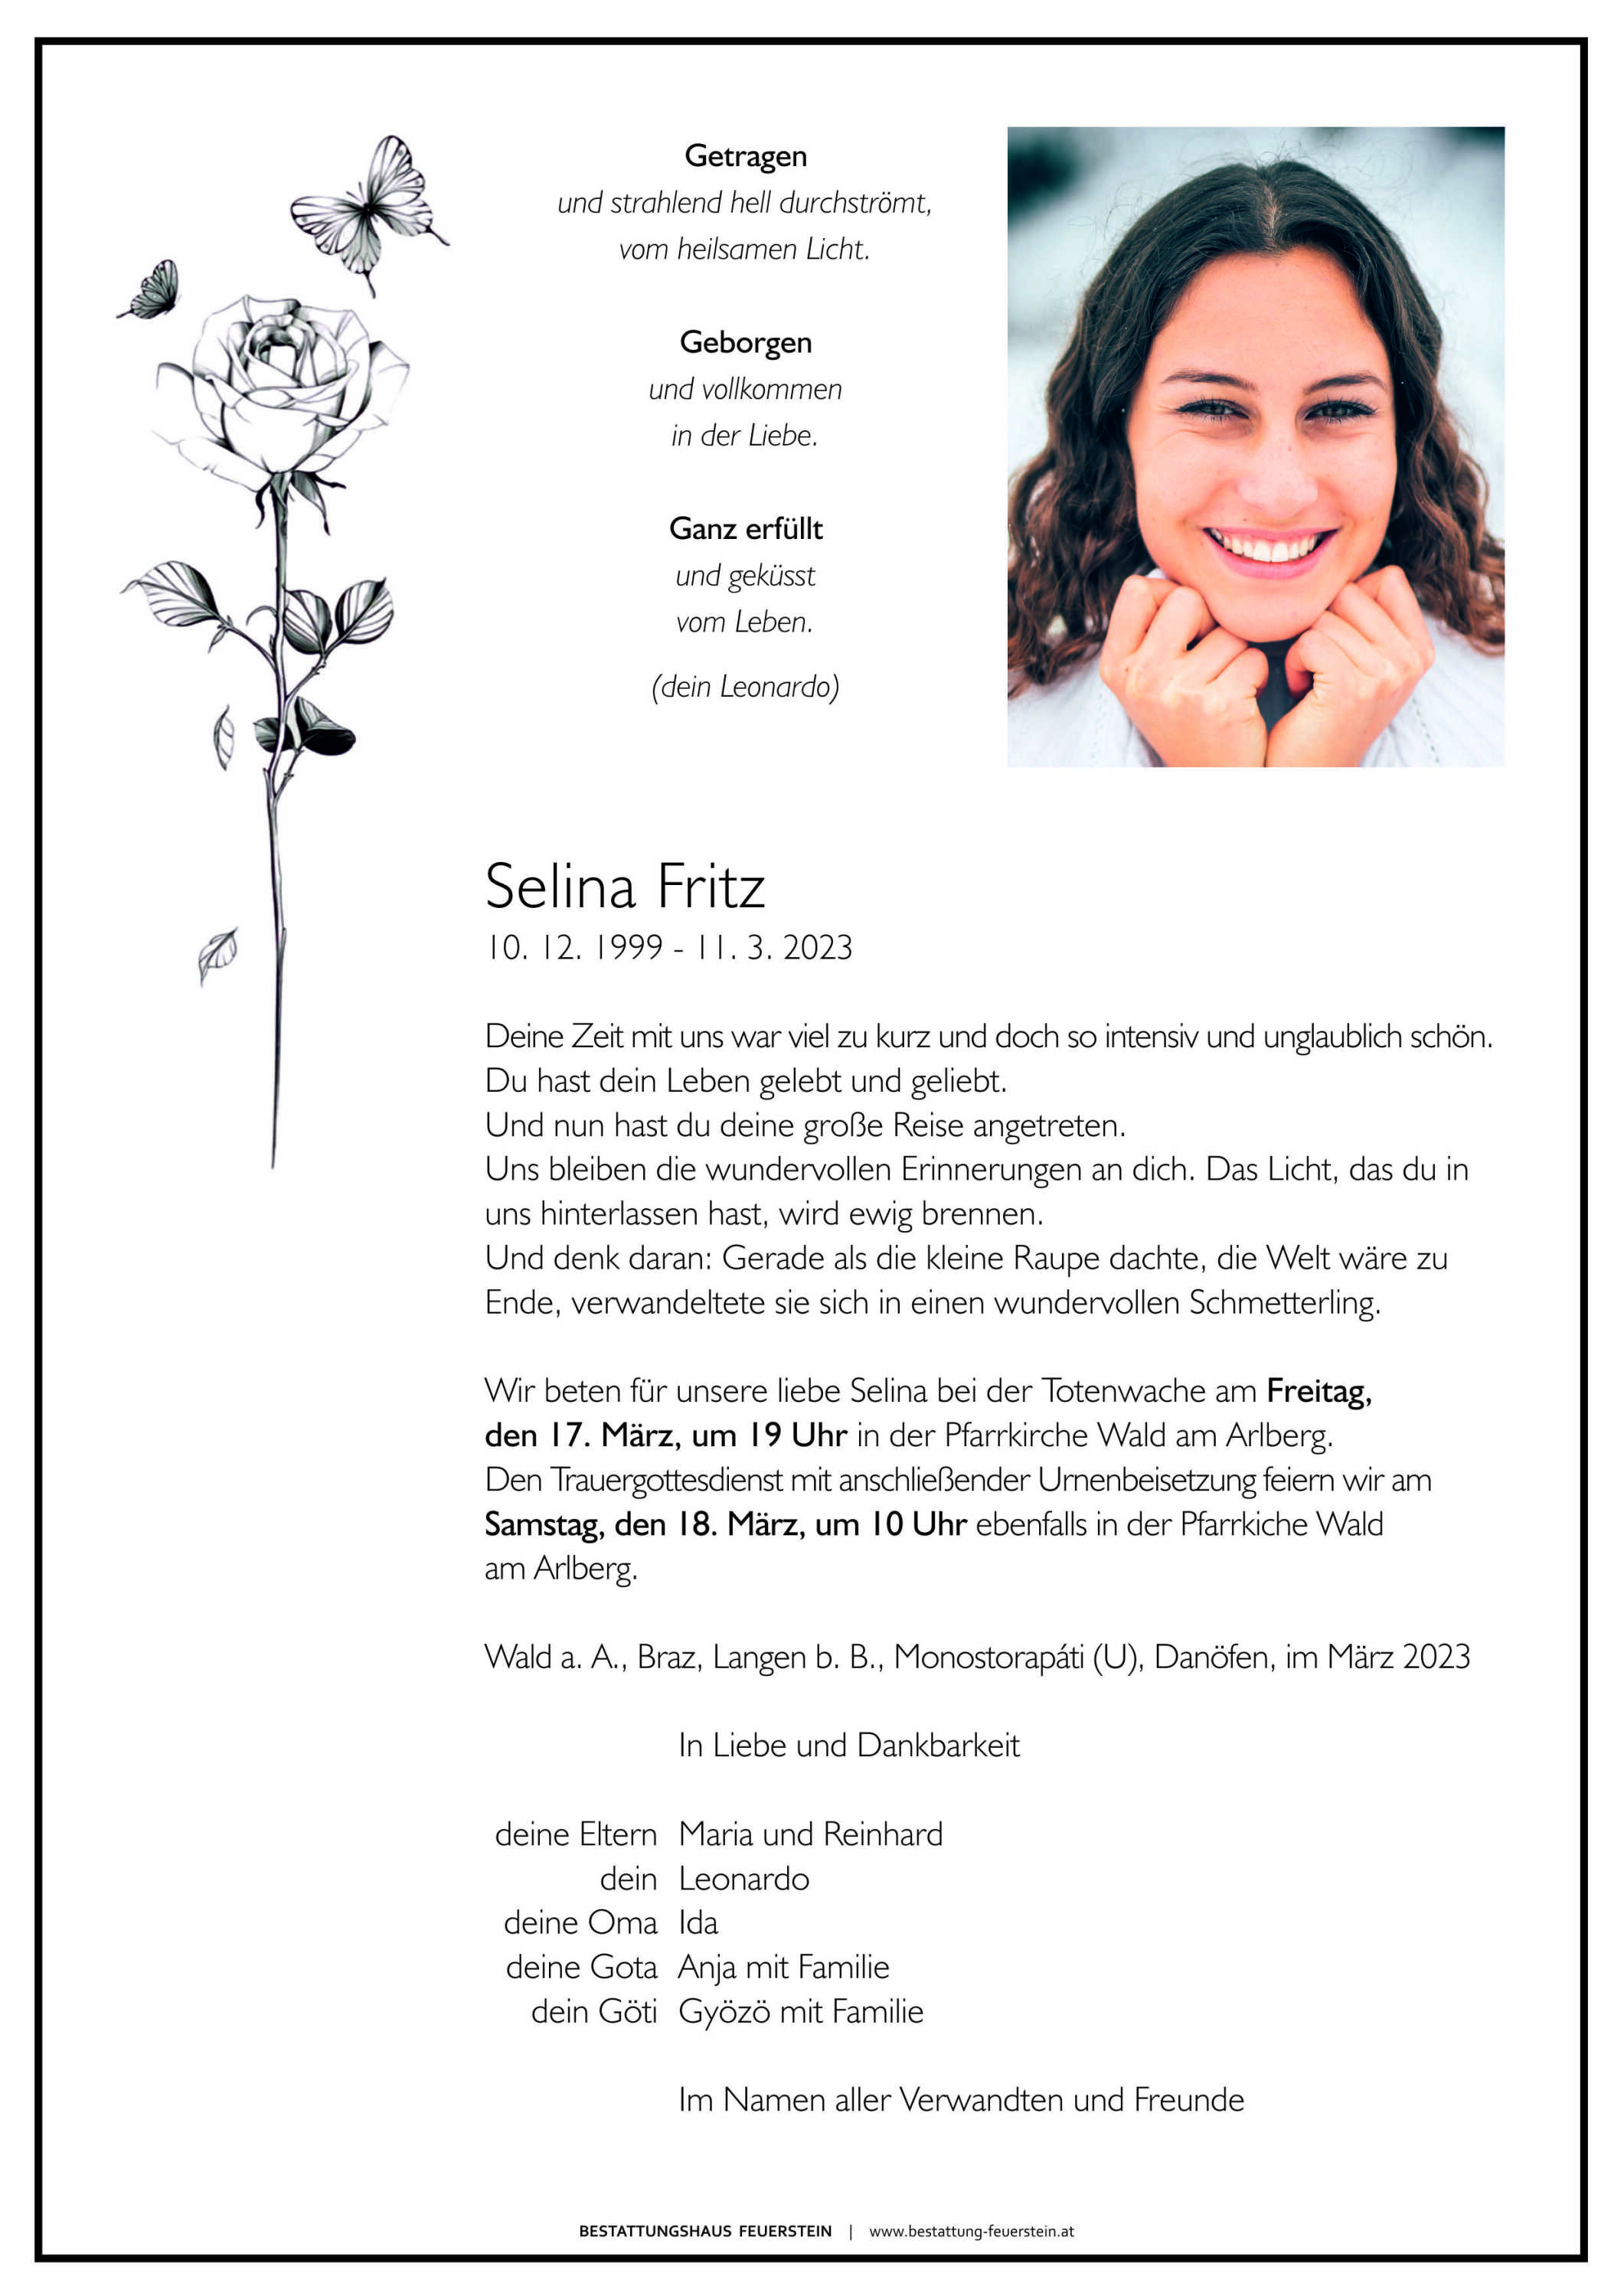 Selina Fritz